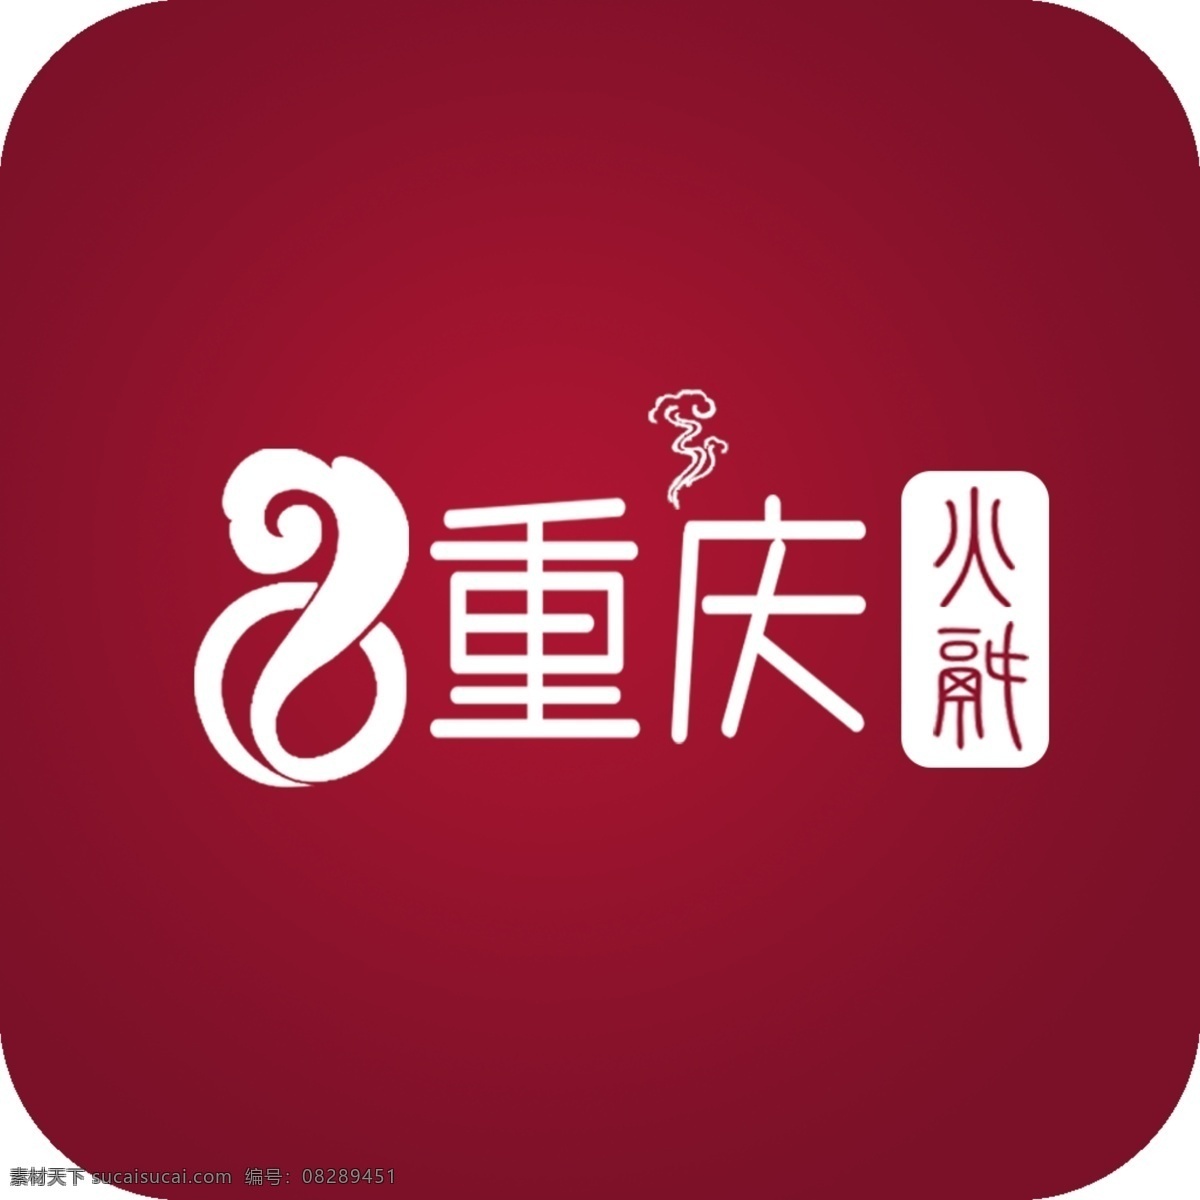 重庆火锅 logo 重庆 火锅